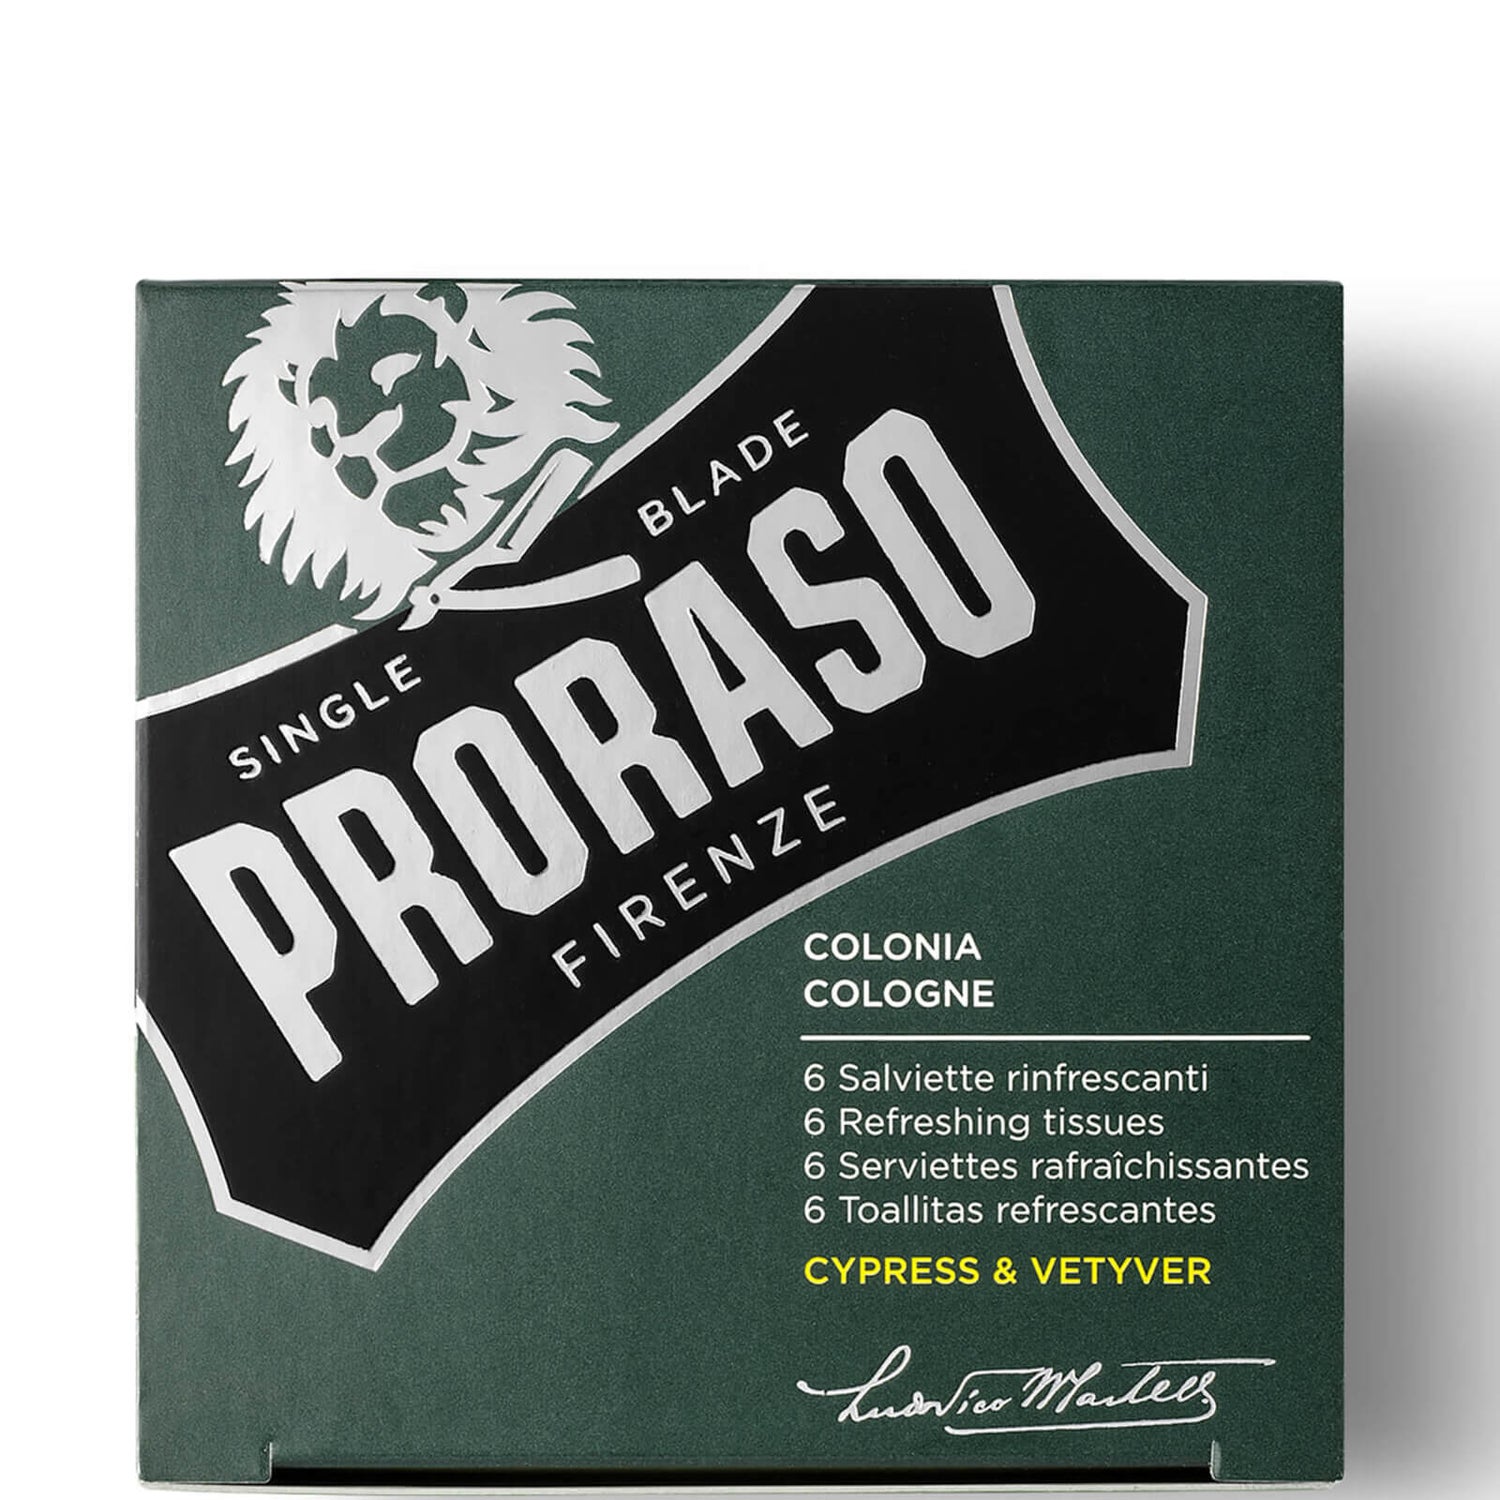 Proraso salviettine rinfrescanti - Cypress and Vetyver (confezione da 6)